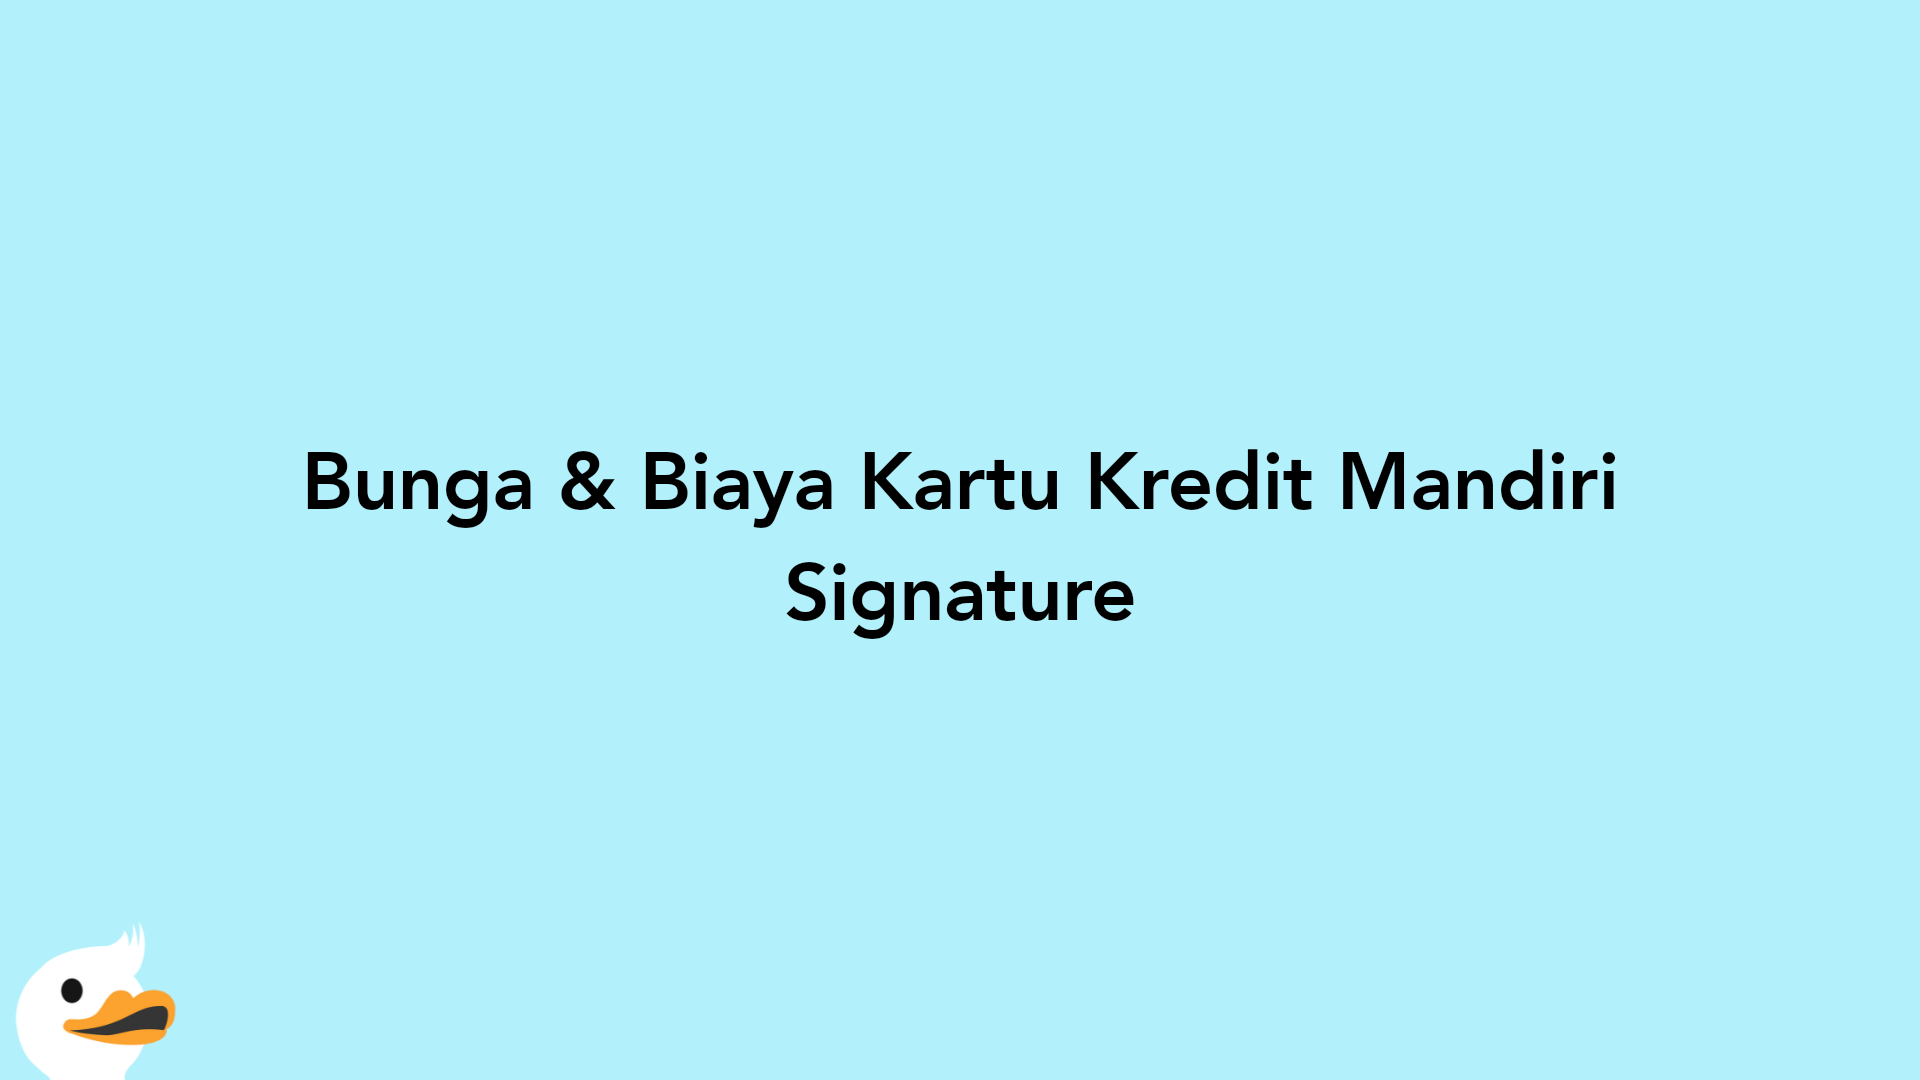 Bunga & Biaya Kartu Kredit Mandiri Signature